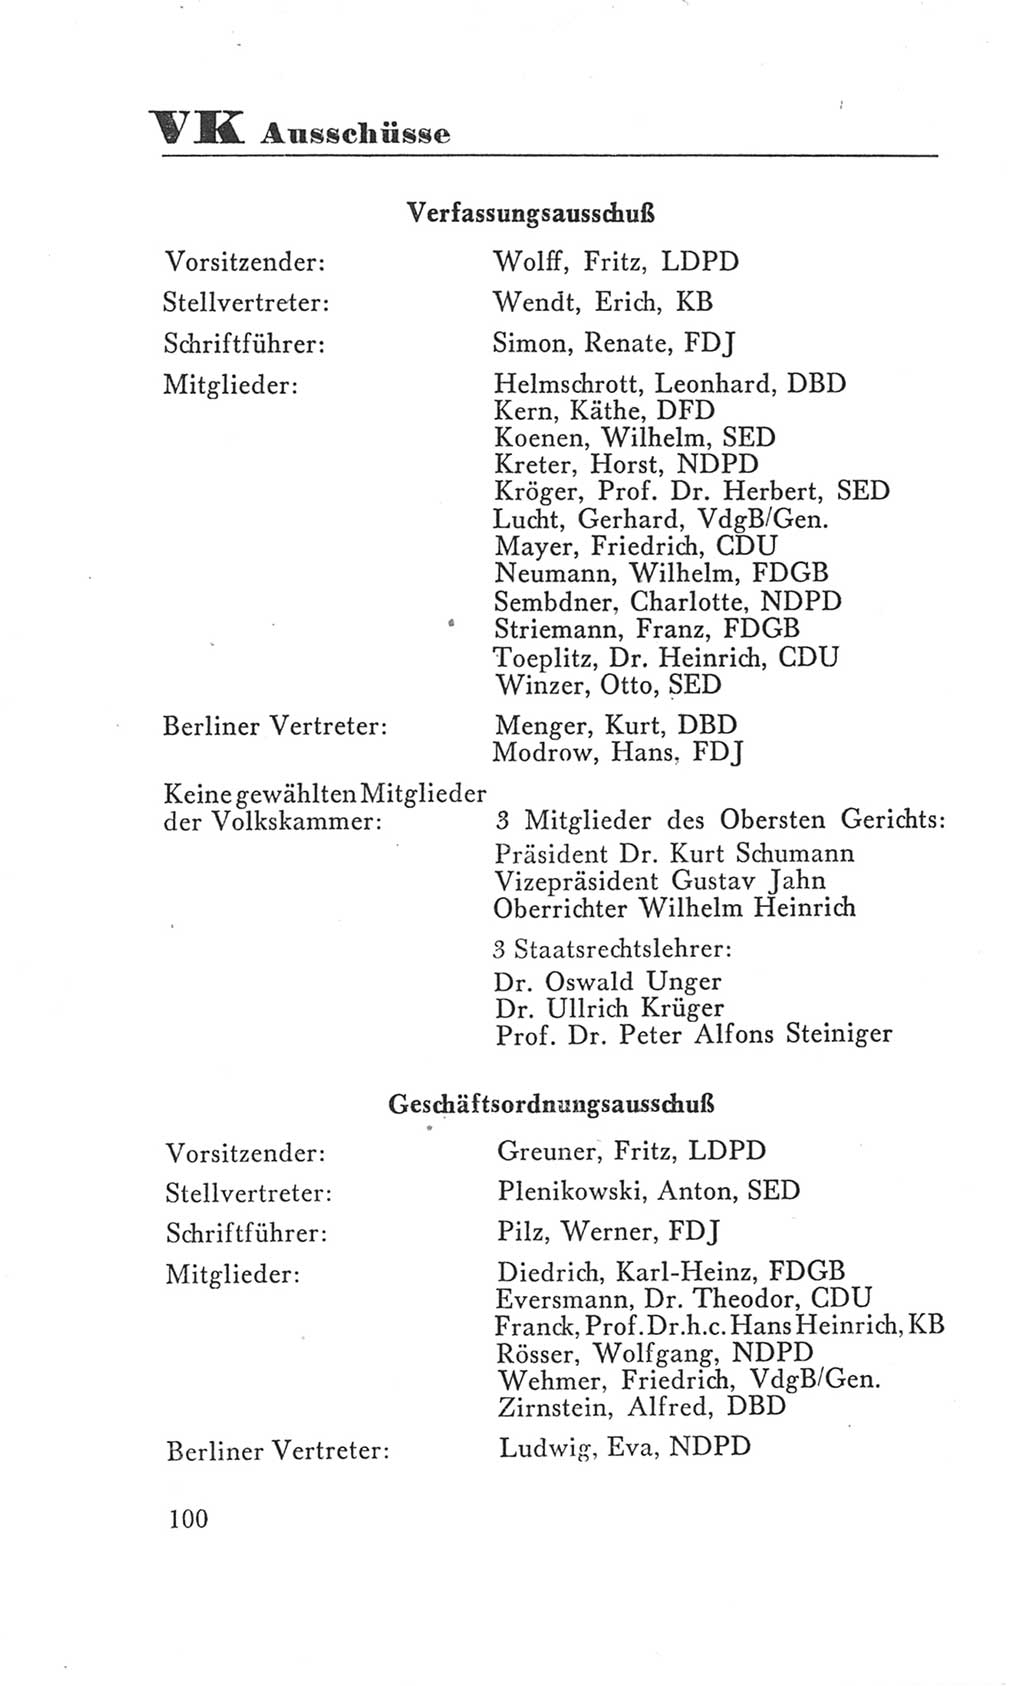 Handbuch der Volkskammer (VK) der Deutschen Demokratischen Republik (DDR), 3. Wahlperiode 1958-1963, Seite 100 (Hdb. VK. DDR 3. WP. 1958-1963, S. 100)